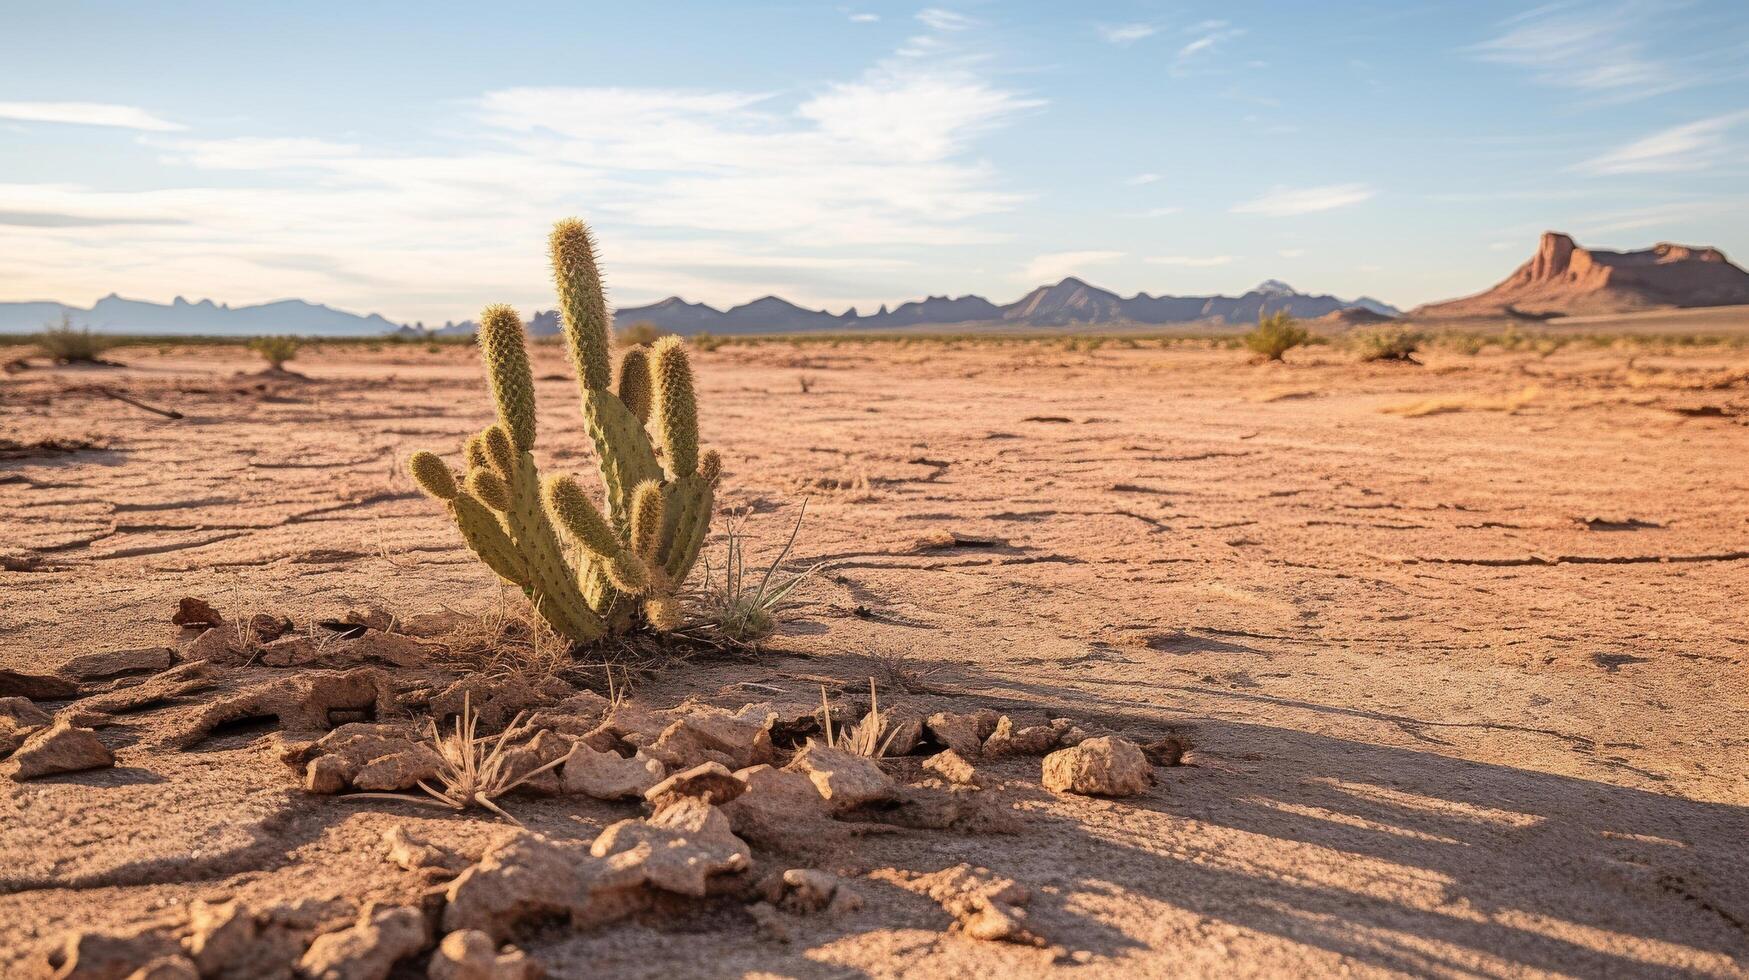 dor landschap met eenzaam cactus foto